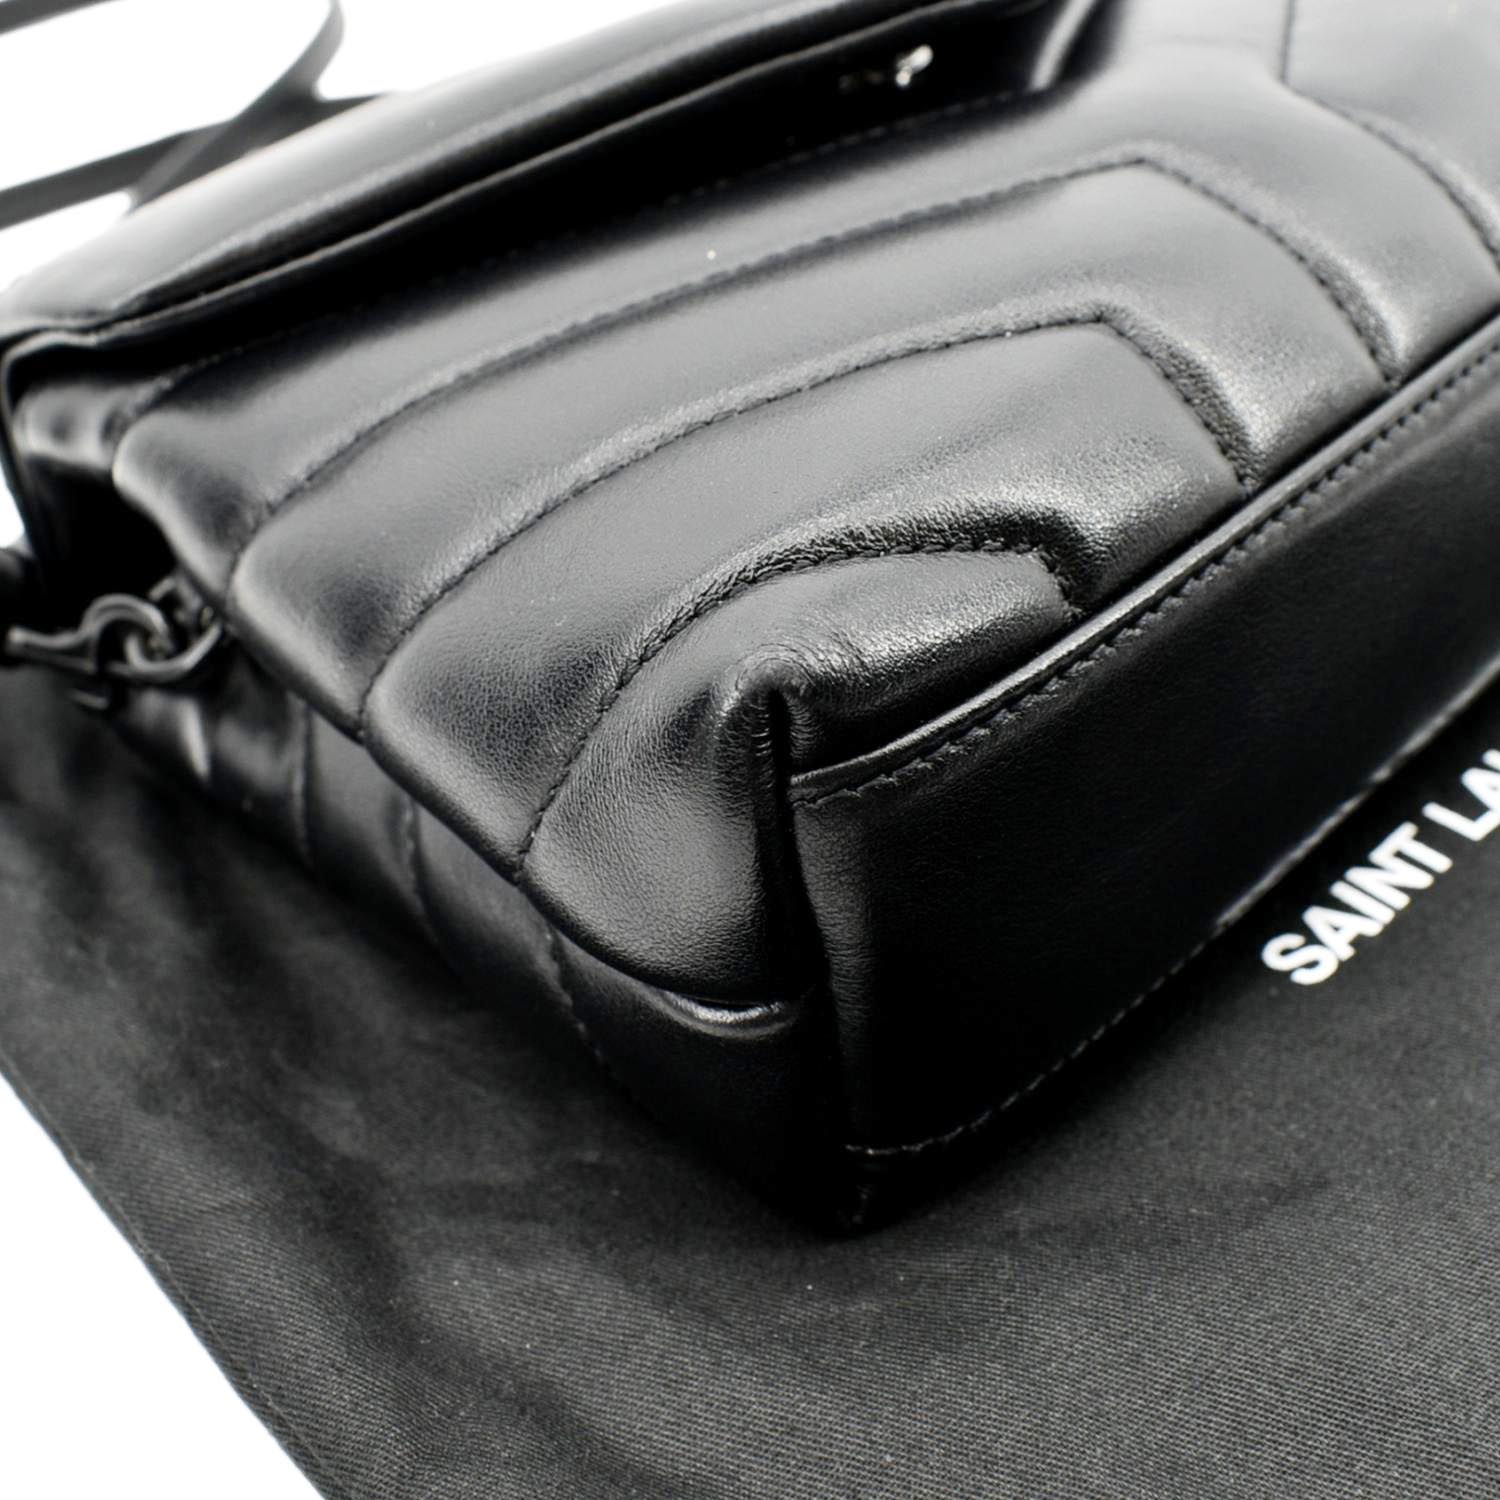 YSL SAINT LAURENT Toy Loulou Matelassé Leather Crossbody Bag Black  $1,350.00 - PicClick